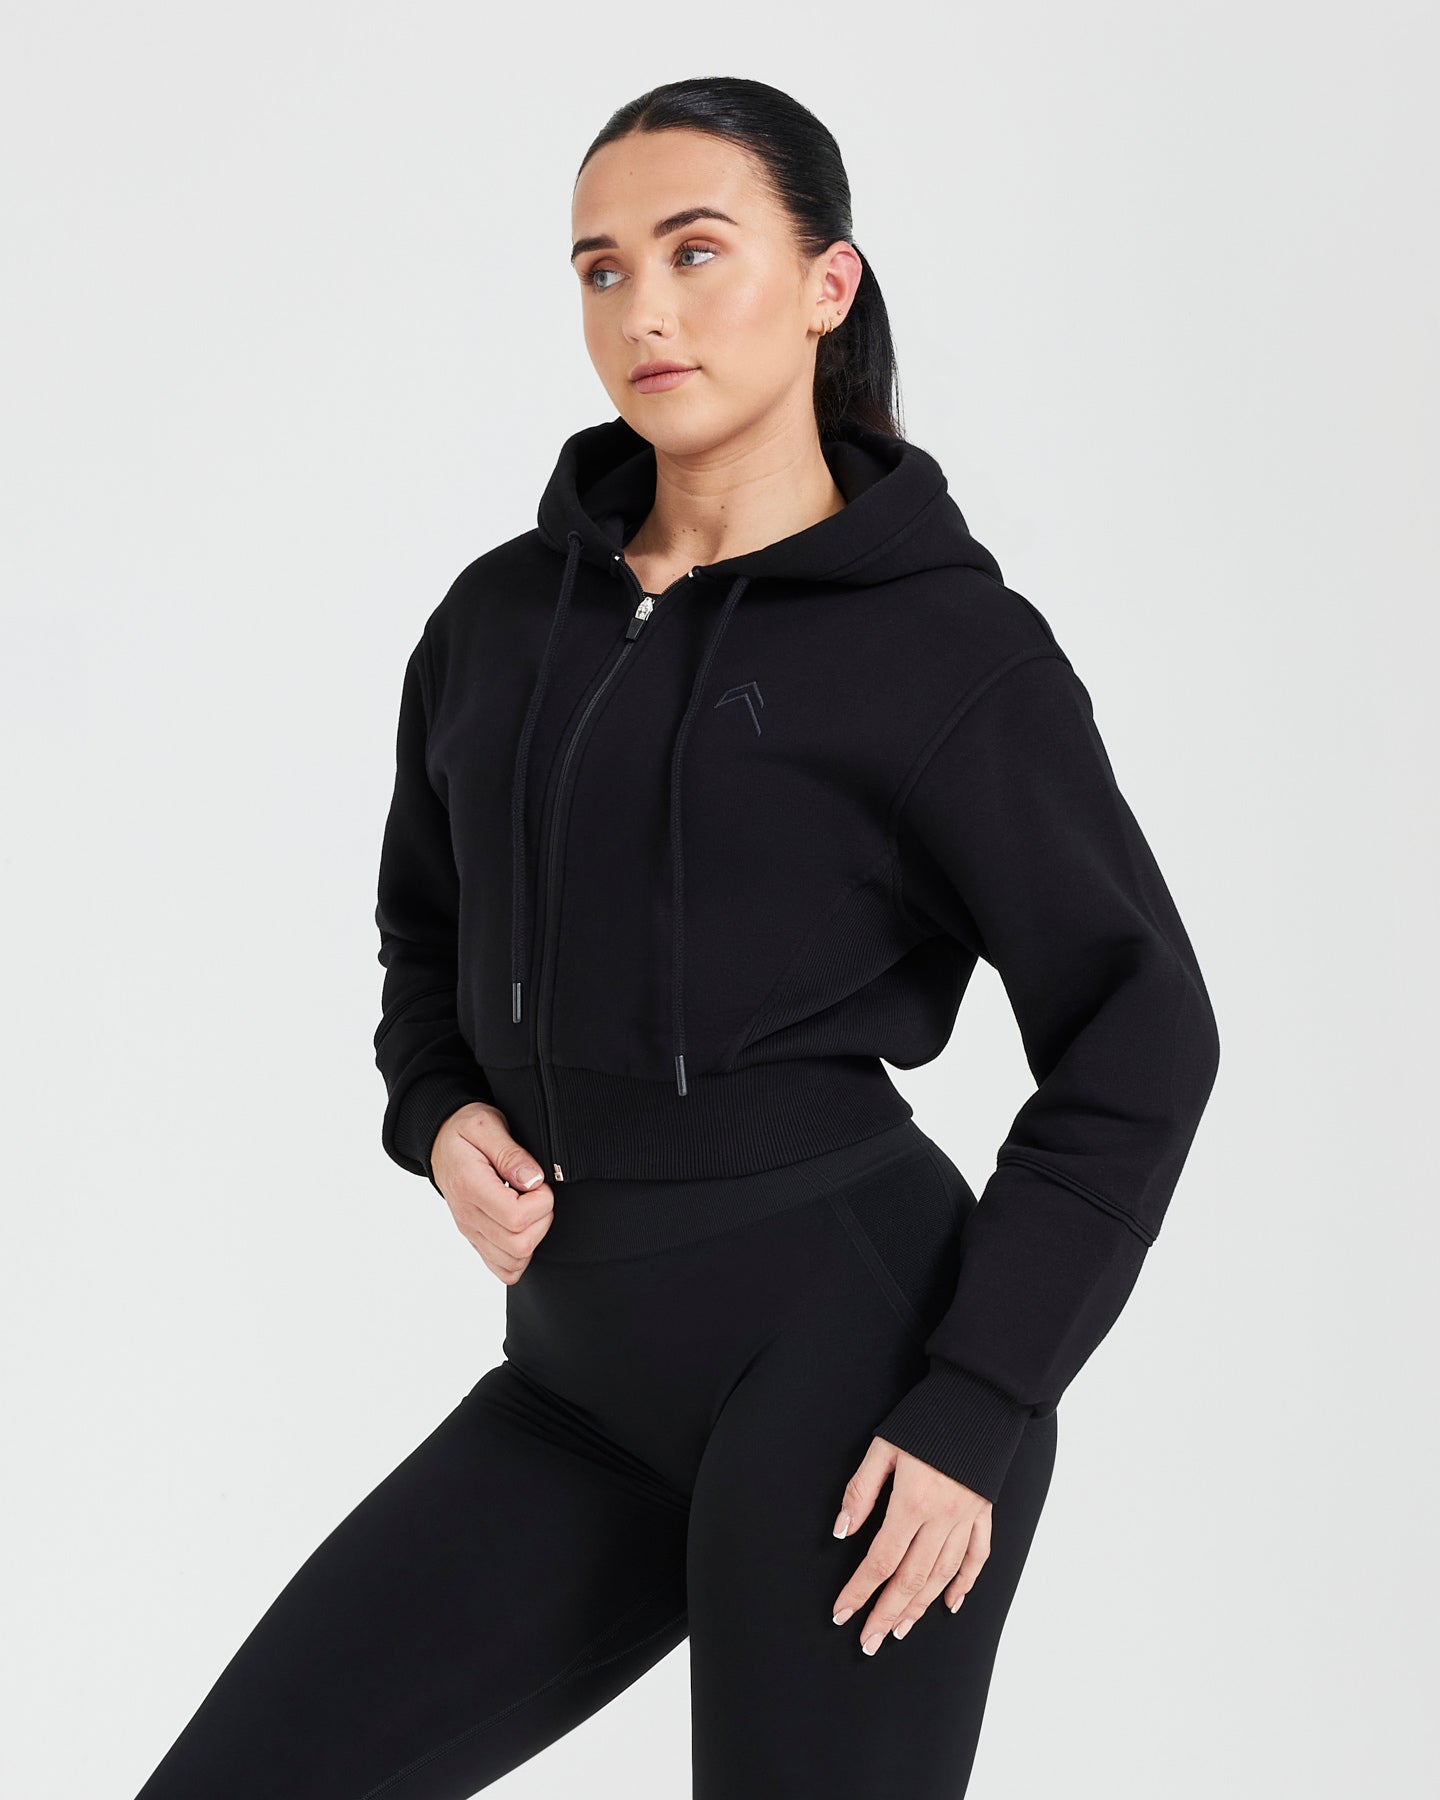 Nike Cropped Zip Up Hoodie in Black